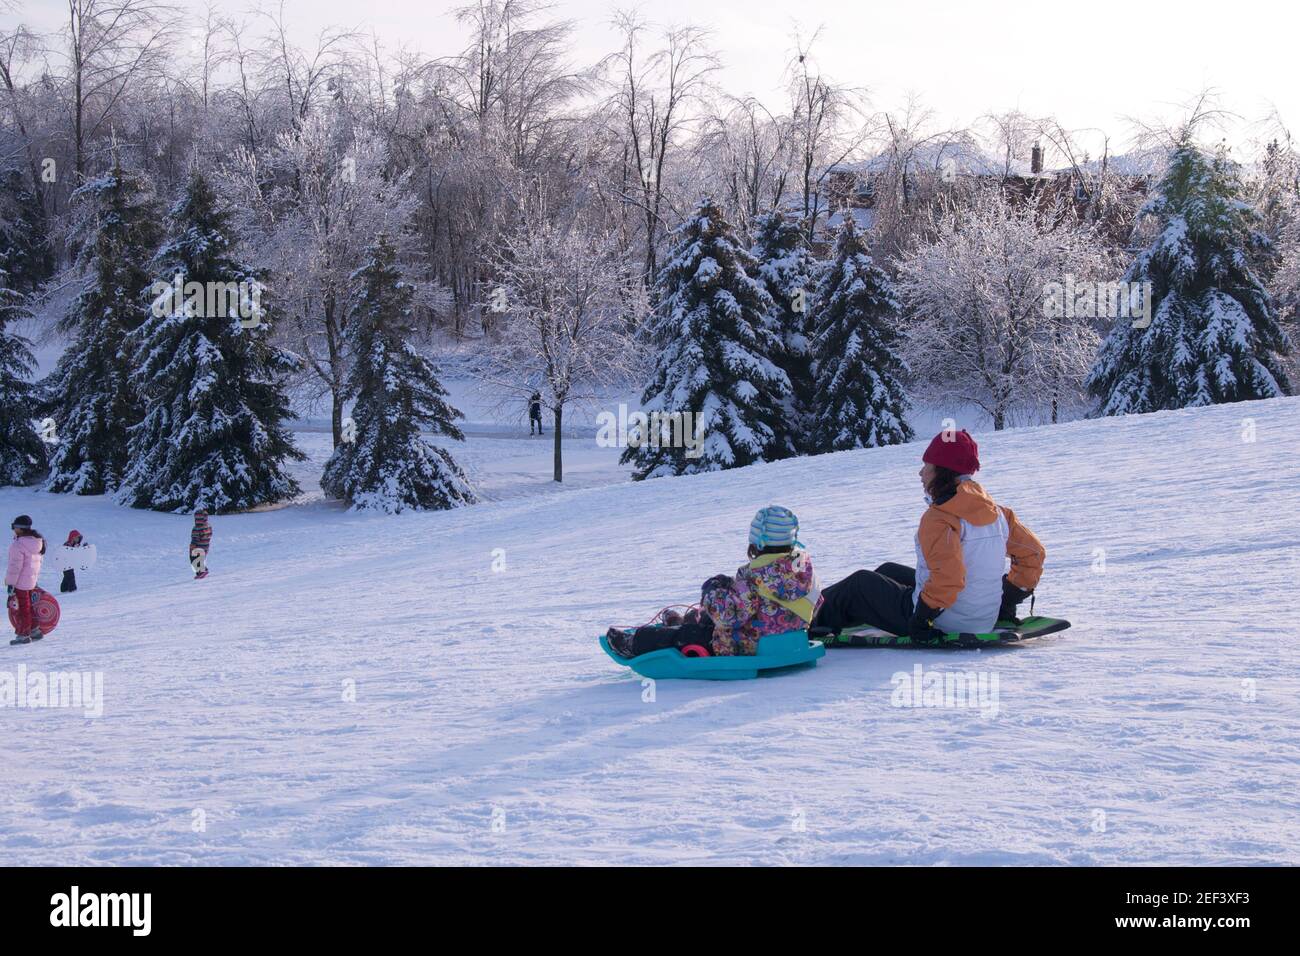 Toronto, Ontario / Canada - 12-27-2013: Wintersport-Rodel - Kind spielt Rodel mit Mutter nach einem Eissturm. Winter, draußen, gesundes Leben Stockfoto